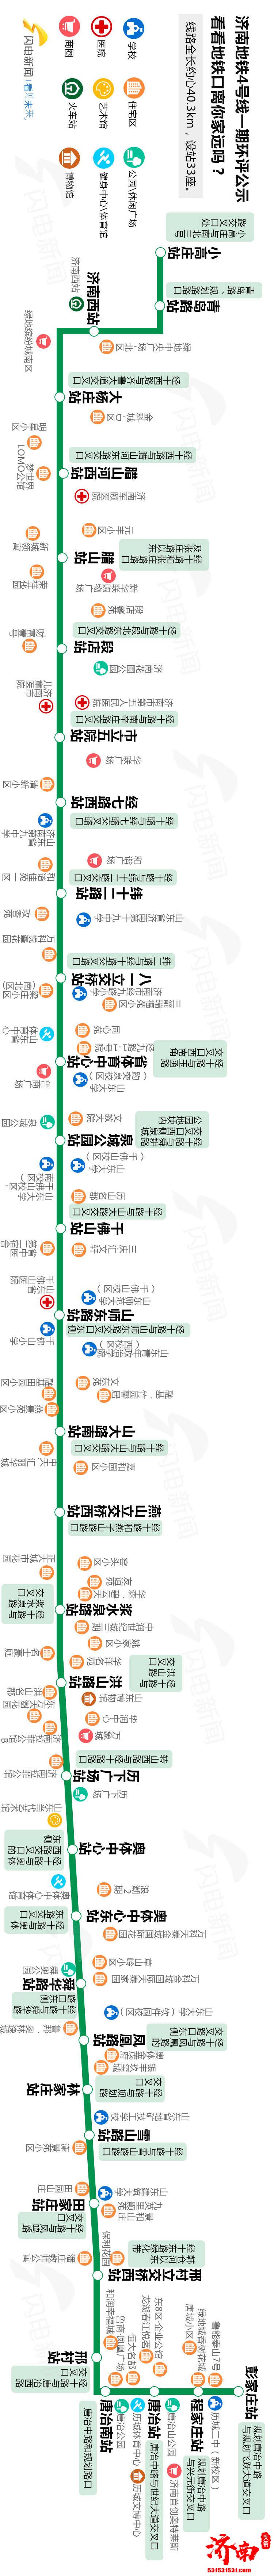 济南地铁4号线一期环评公示 看看地铁口离你家远吗?